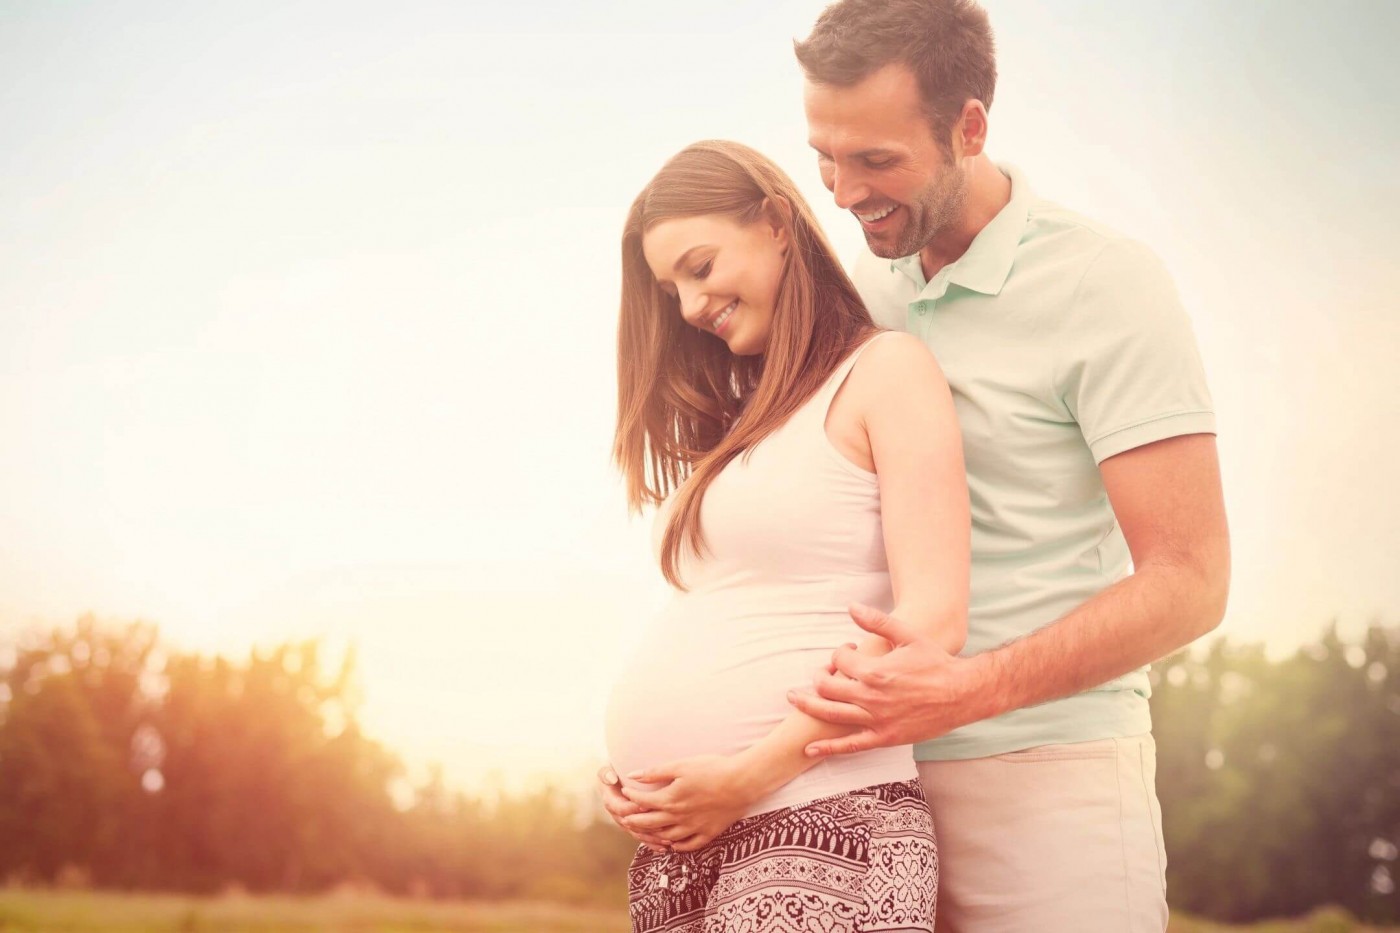 Мужская фертильность: пора развеять мифы